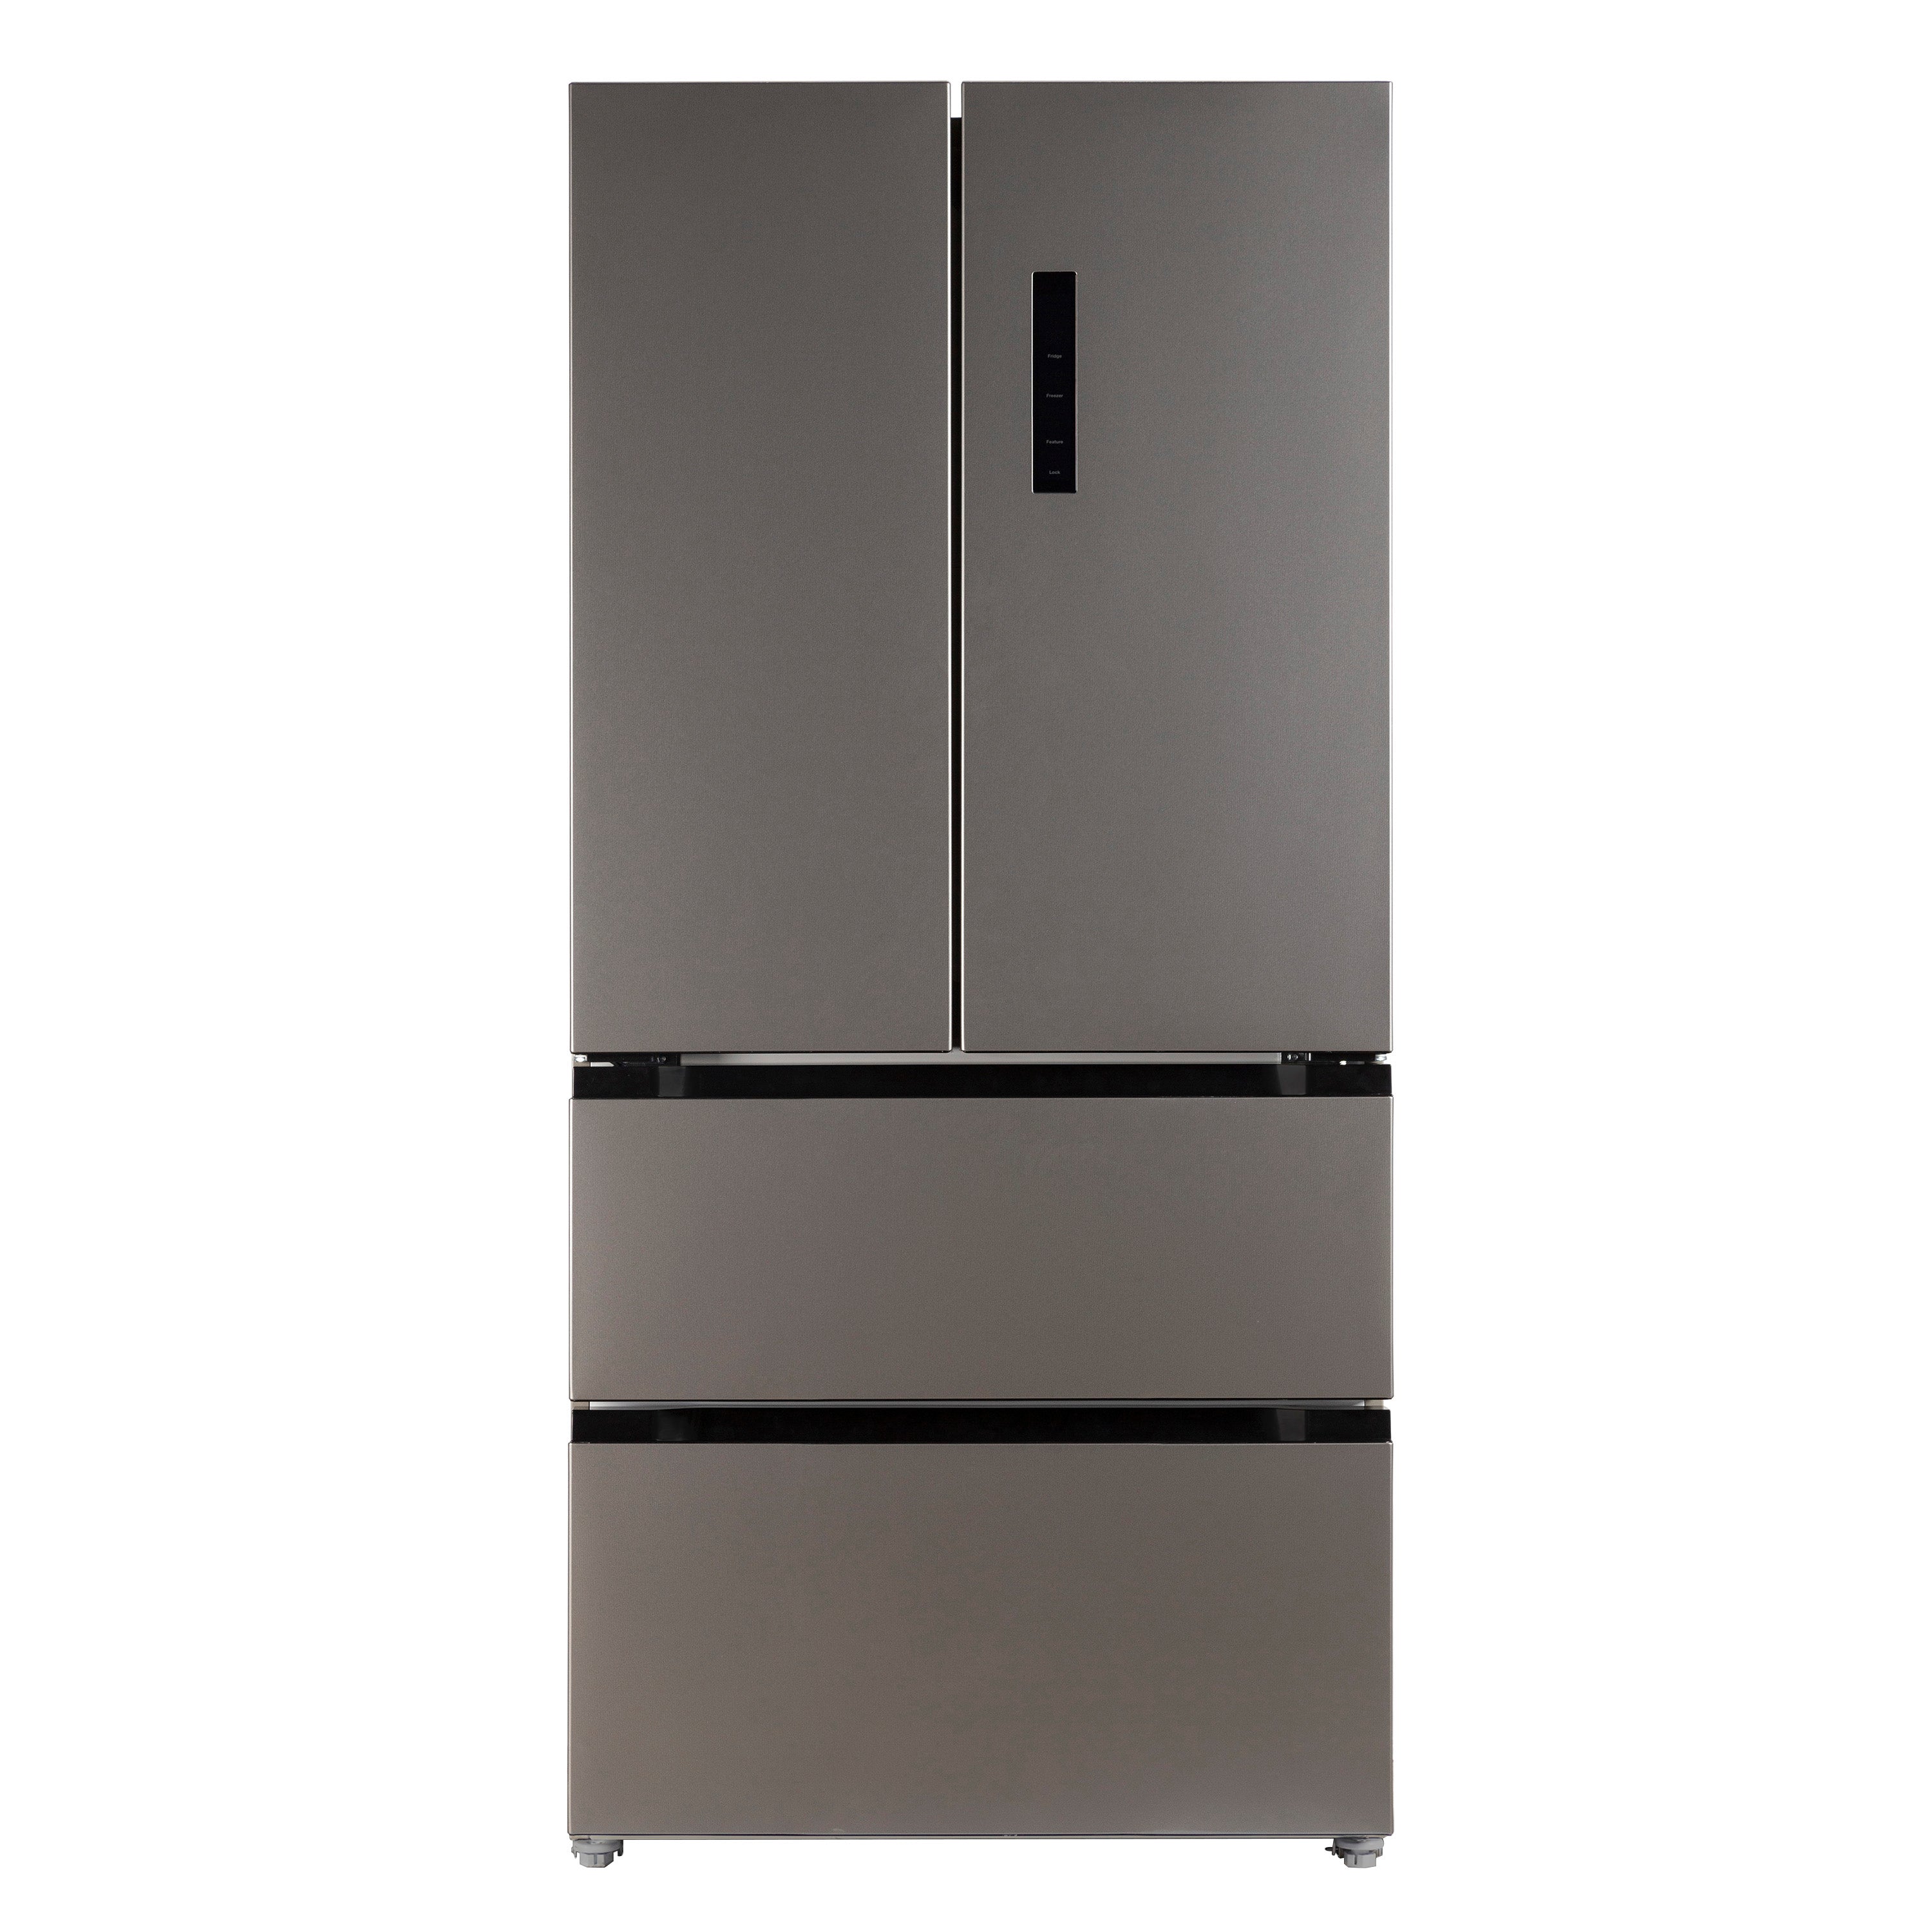 Avanti - FFFDD18L3S, Avanti Frost Free French Door Refrigerator, 18.0 cu. ft., in Stainless Steel